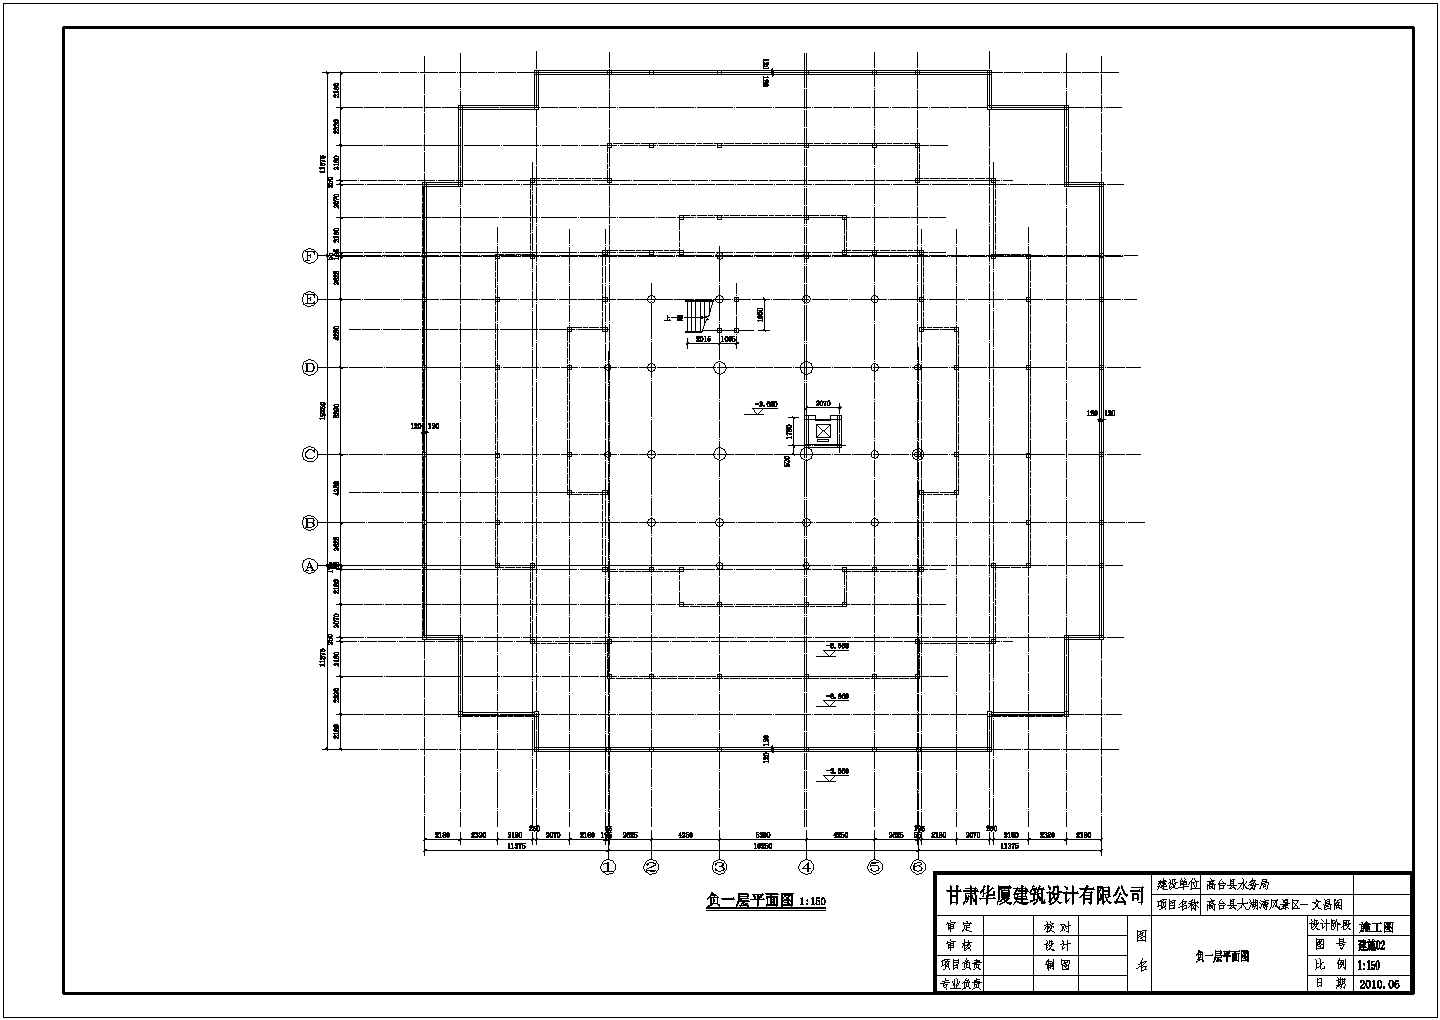 1124 平方米五层文昌阁古建筑设计施工图